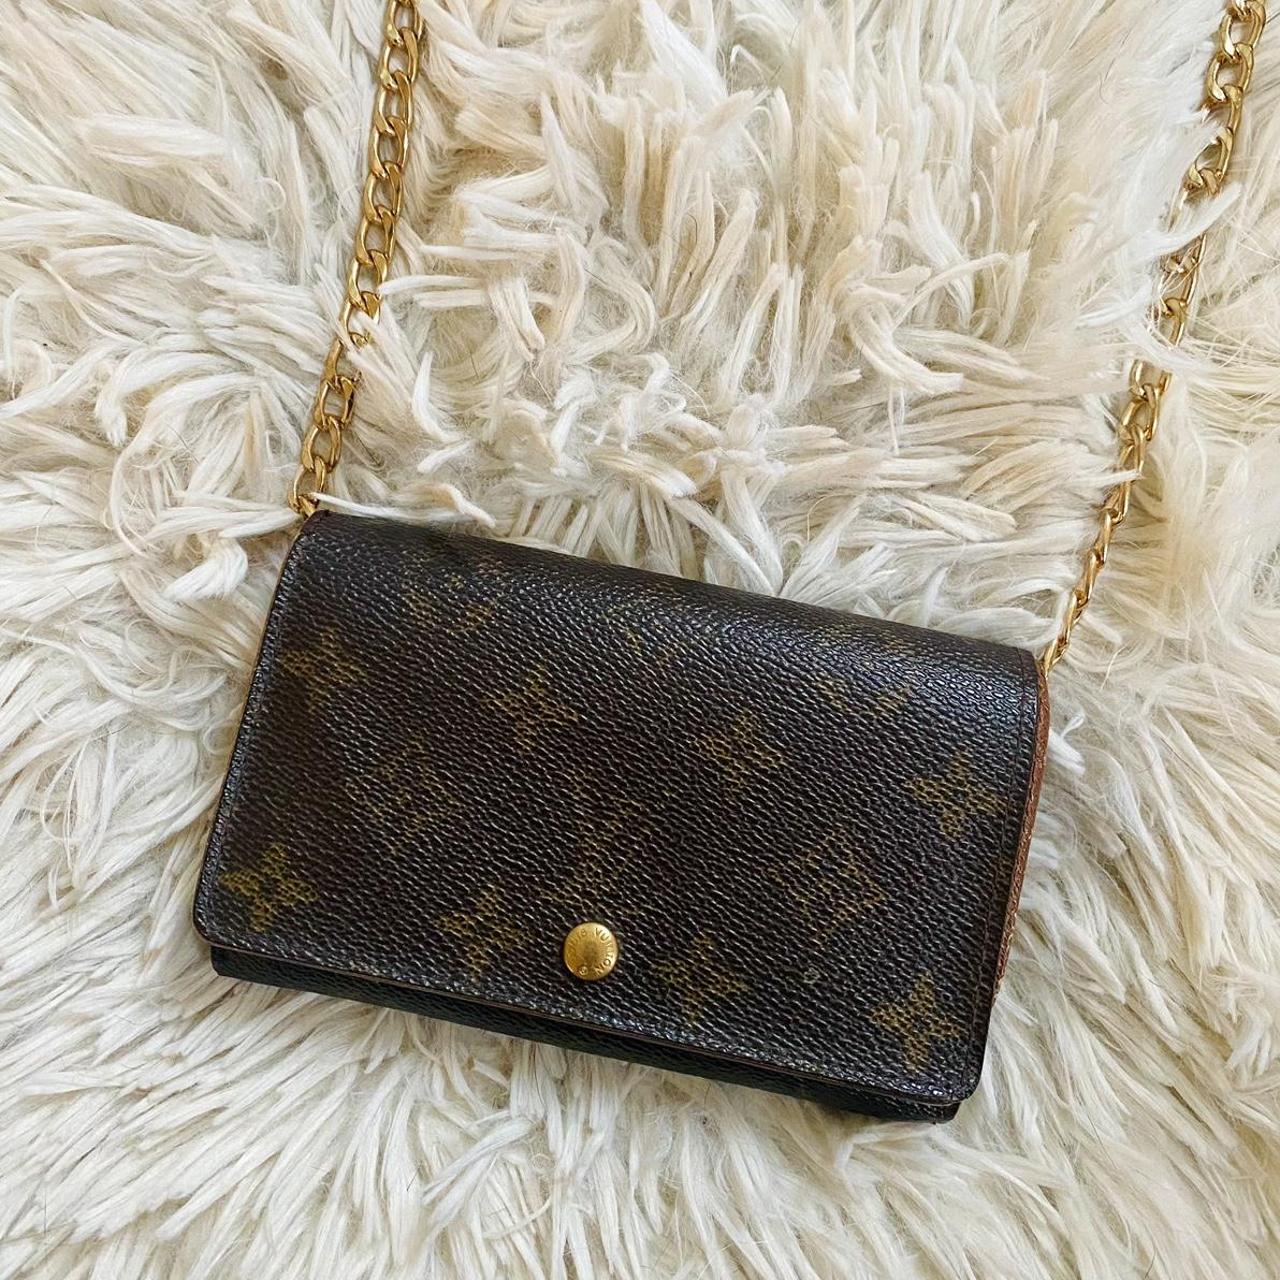 Authentic vintage Louis Vuitton wallet Has some - Depop